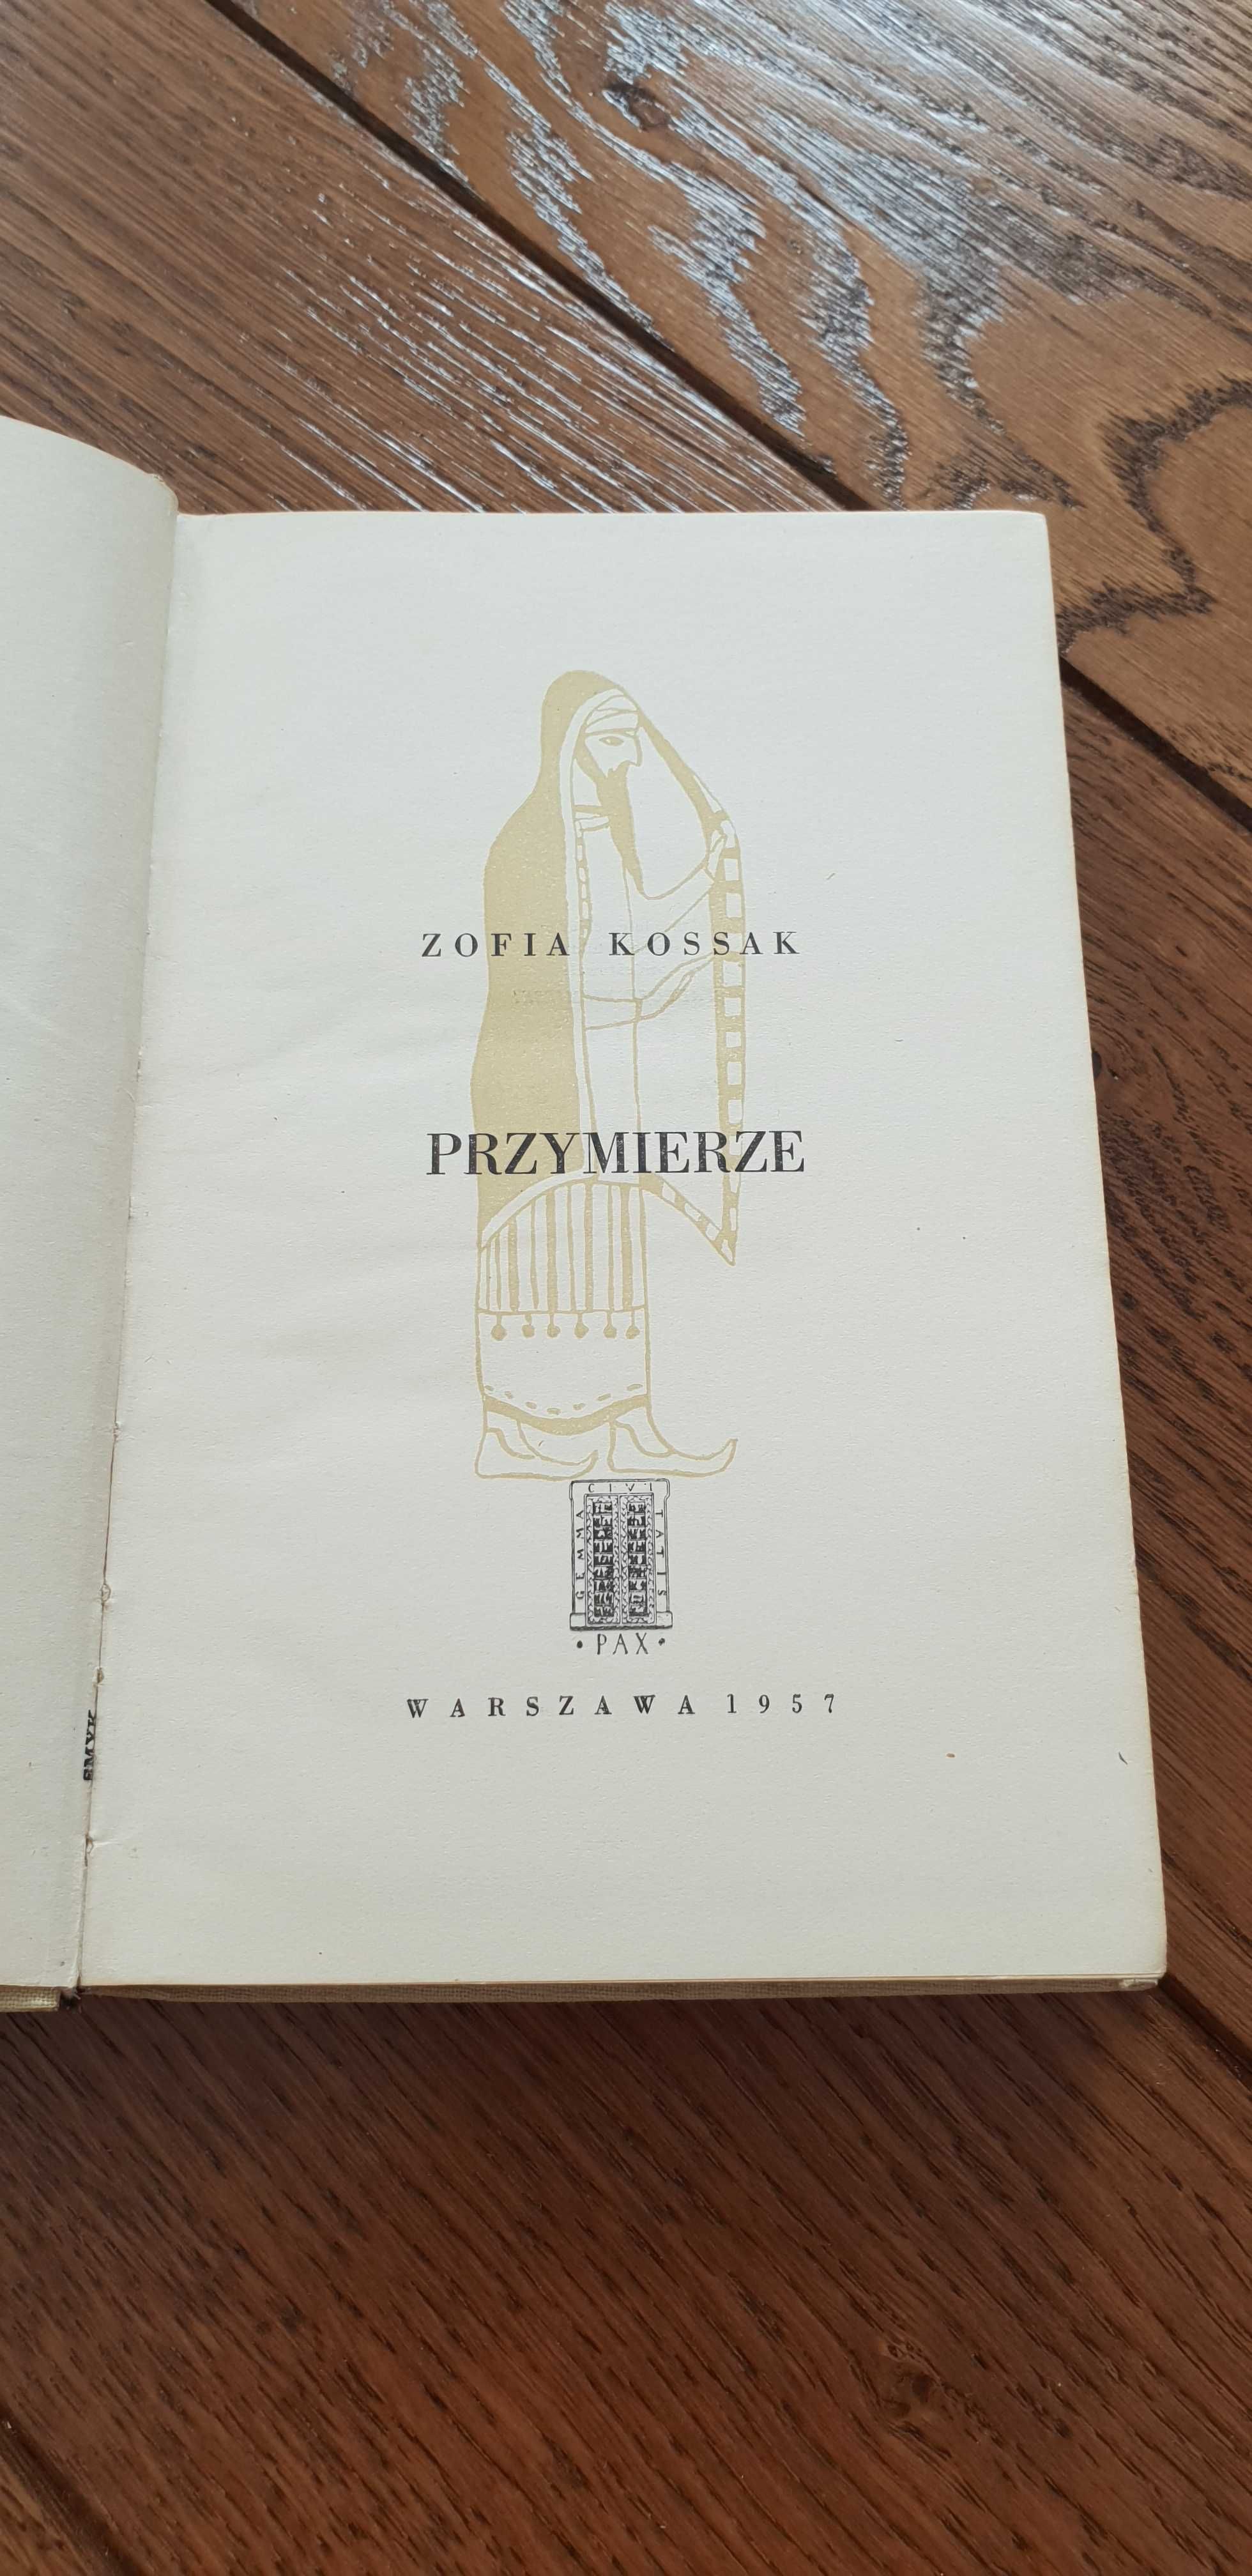 Książka rok 1957 "Przymierze" Zofia Kossak